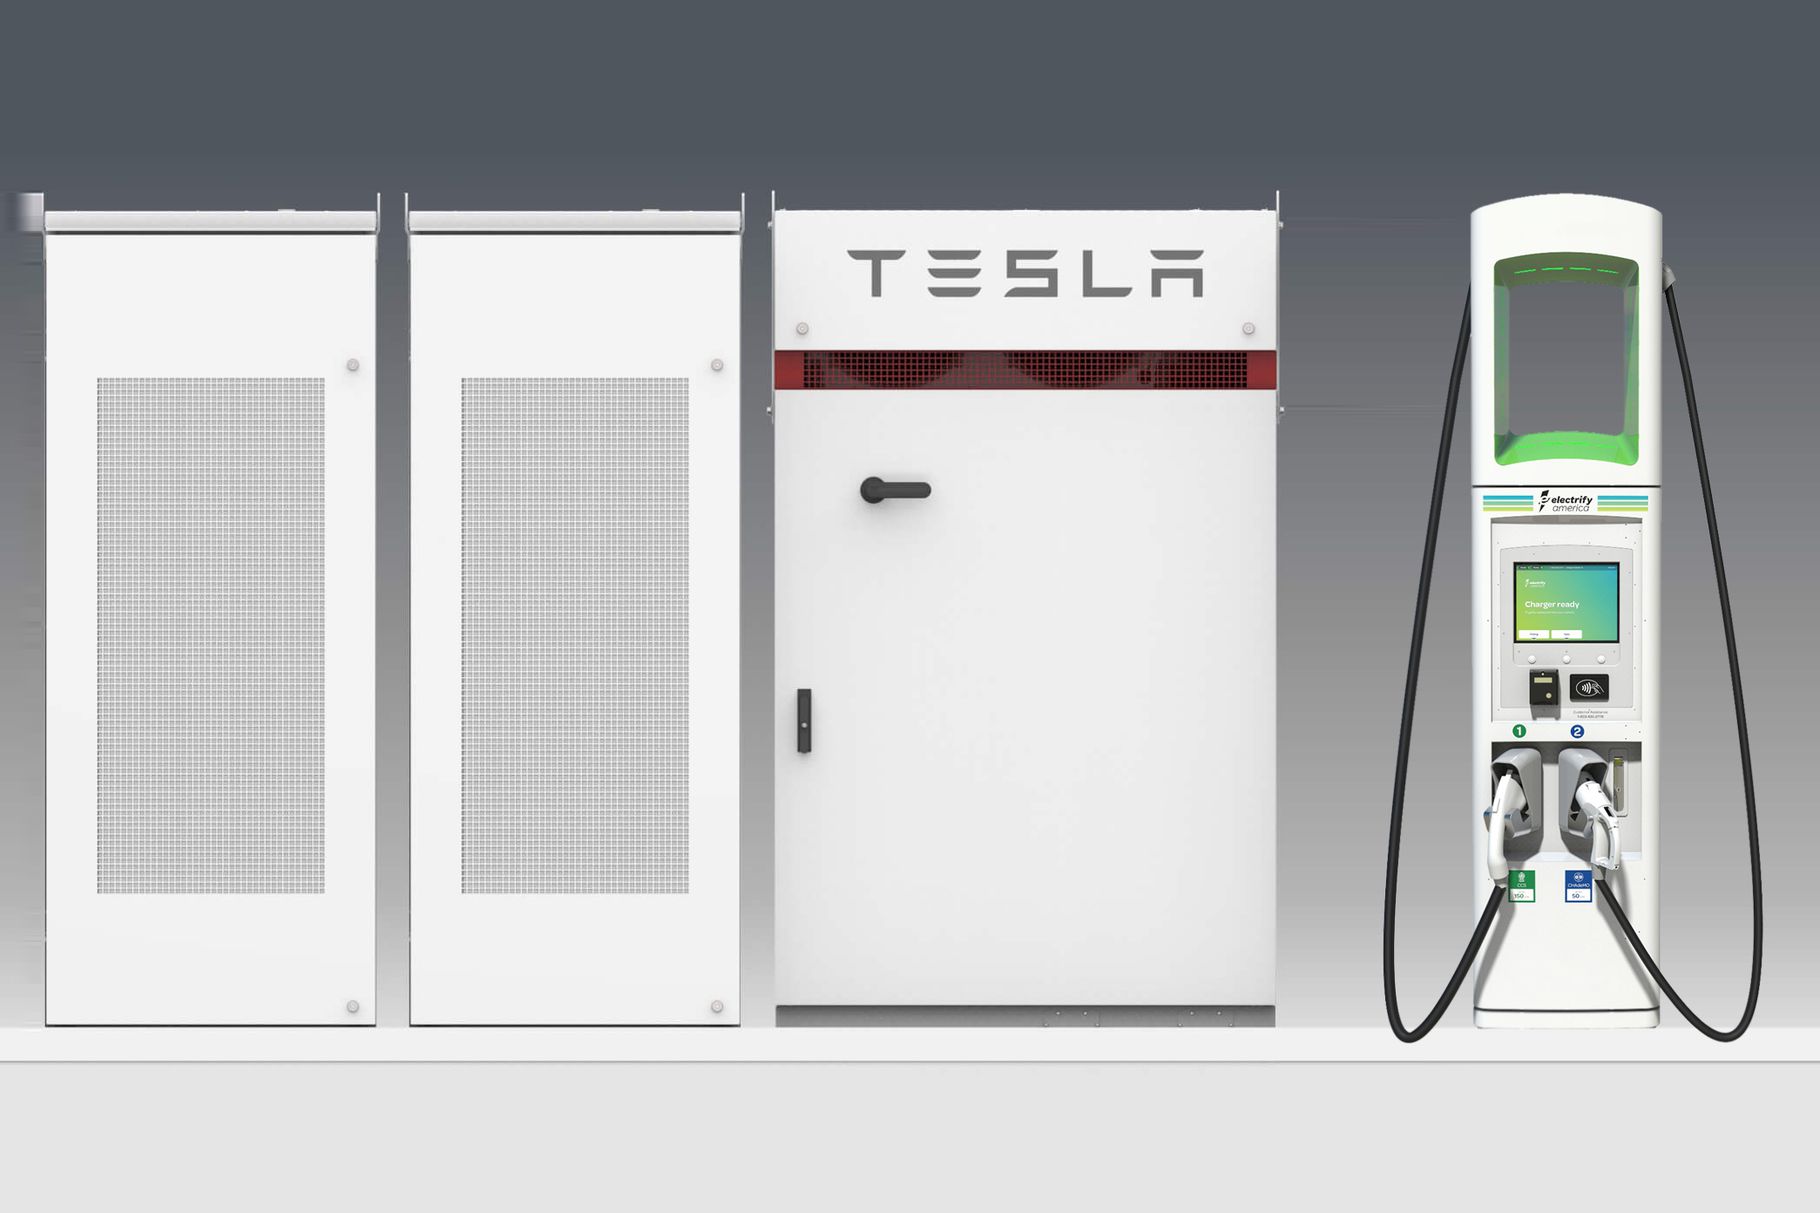 Tesla décide de collaborer avec Volkswagen pour lui fournir une centaine de stations de recharge.